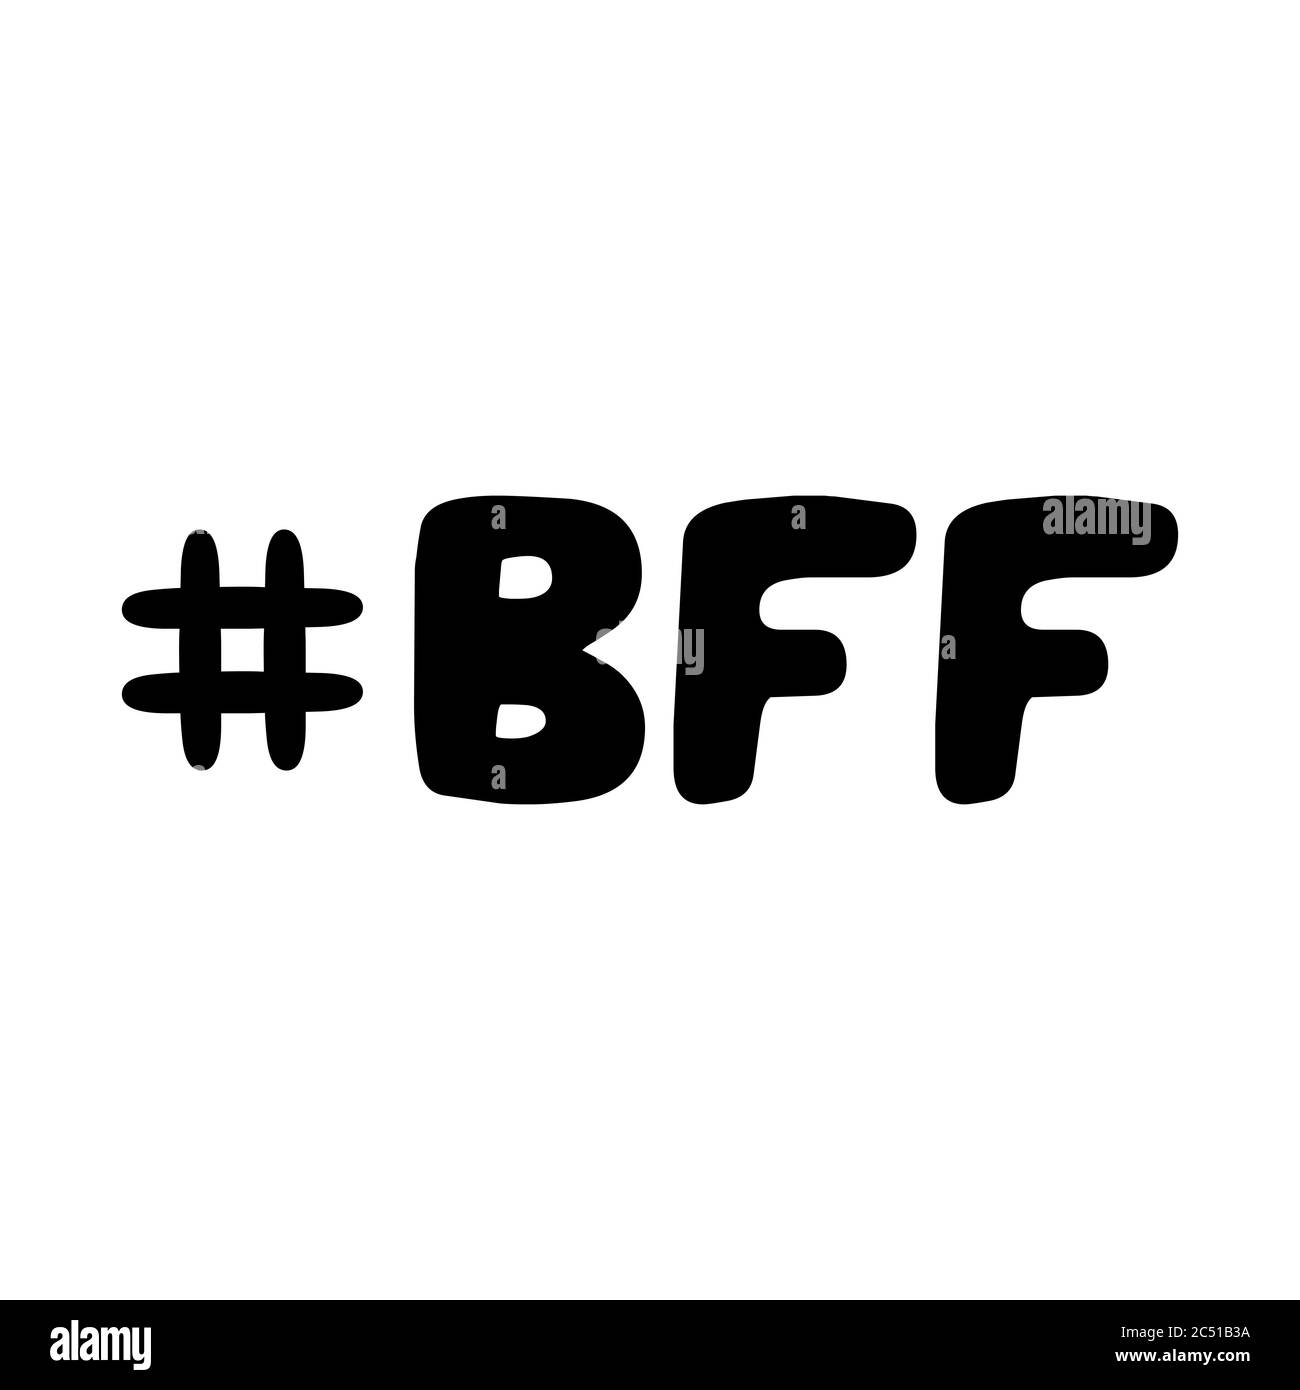 Best friend bff Banque d'images noir et blanc - Alamy